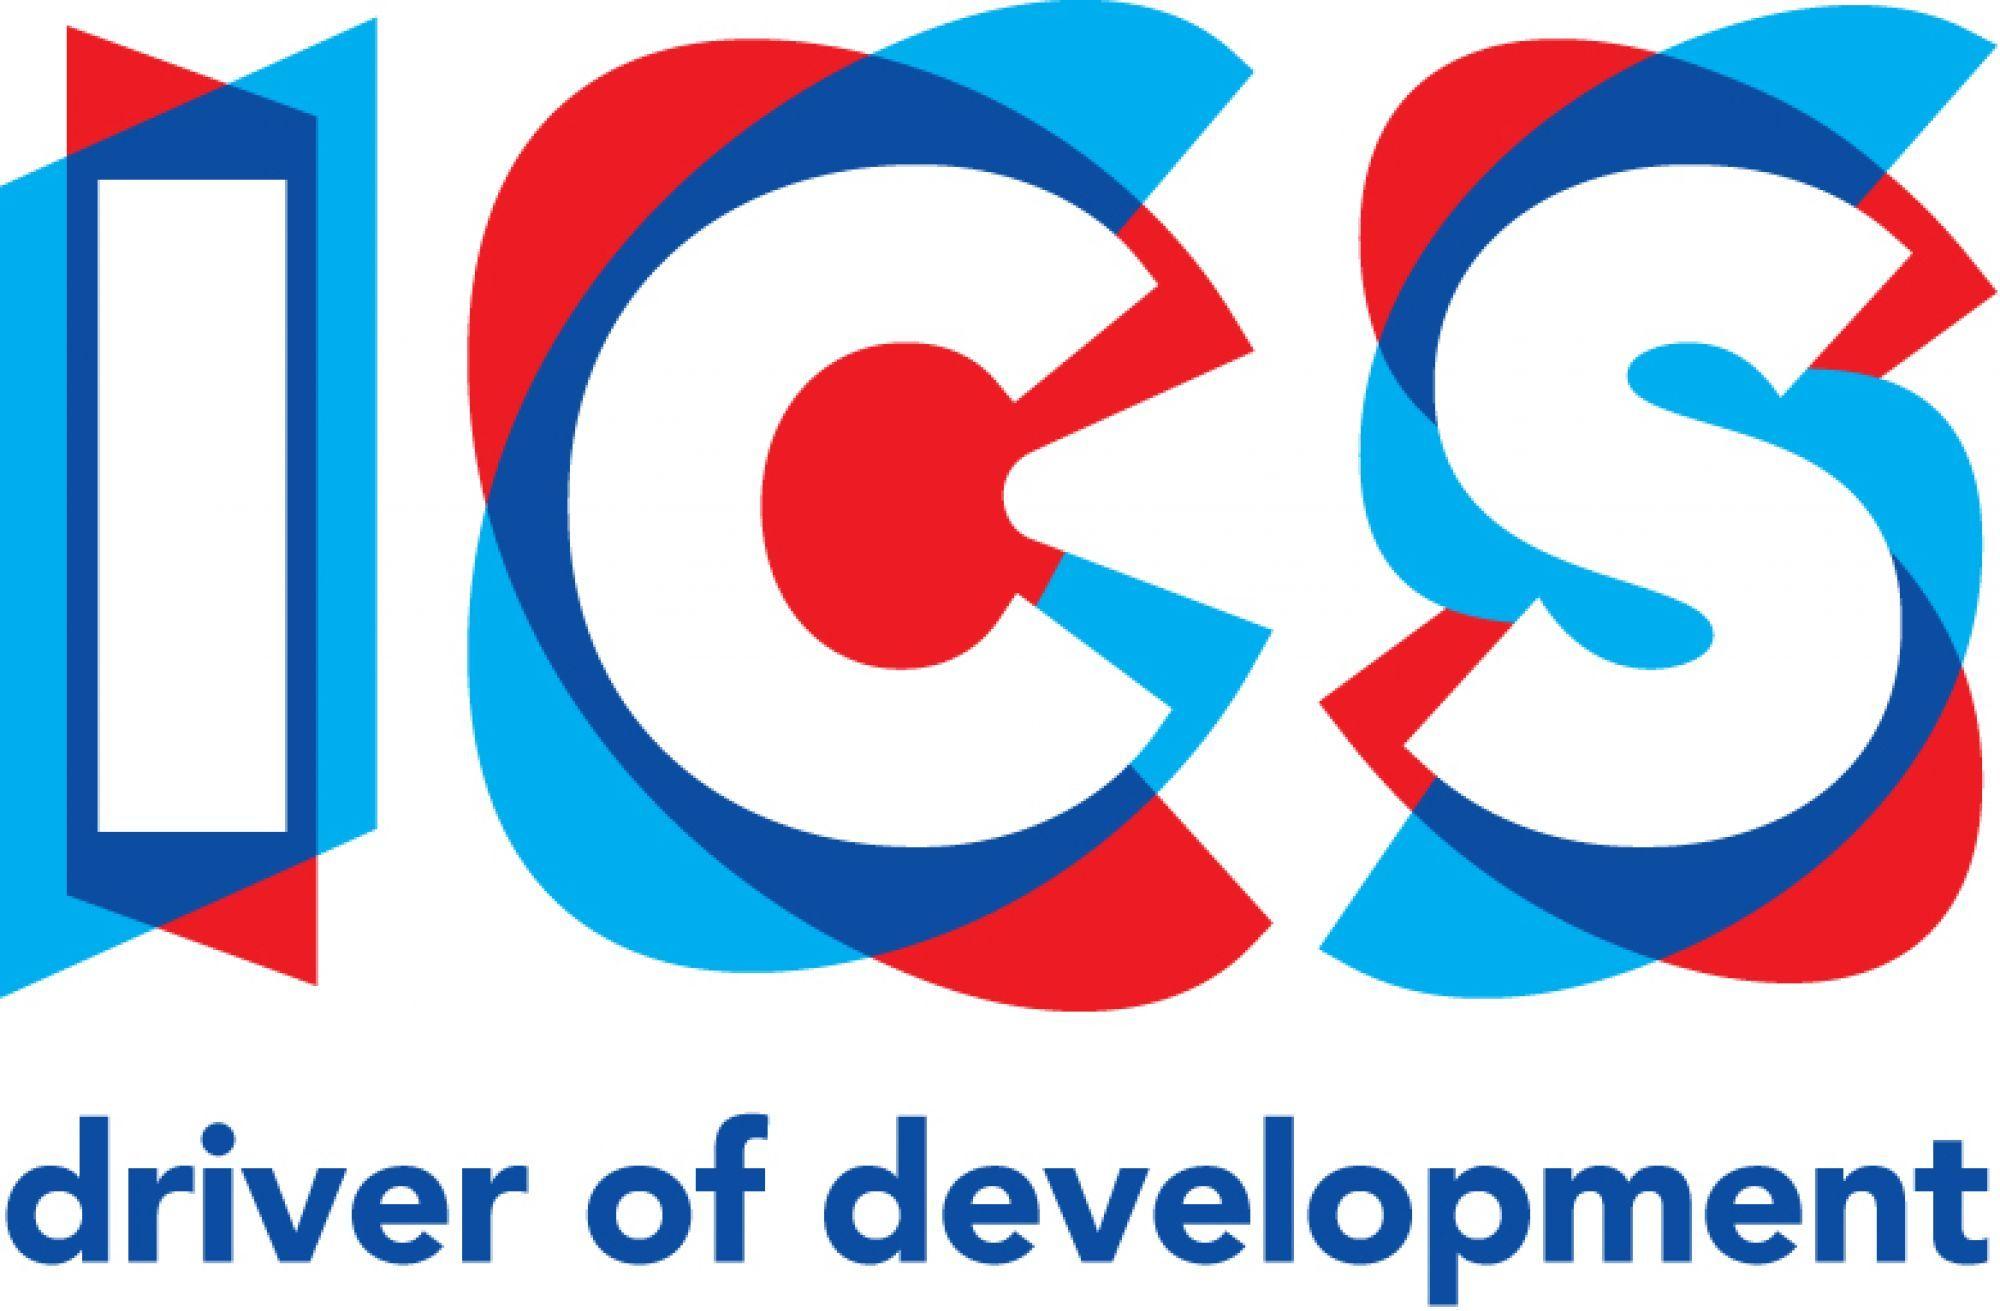 ICS Logo - ICS - Fundraising for ICS